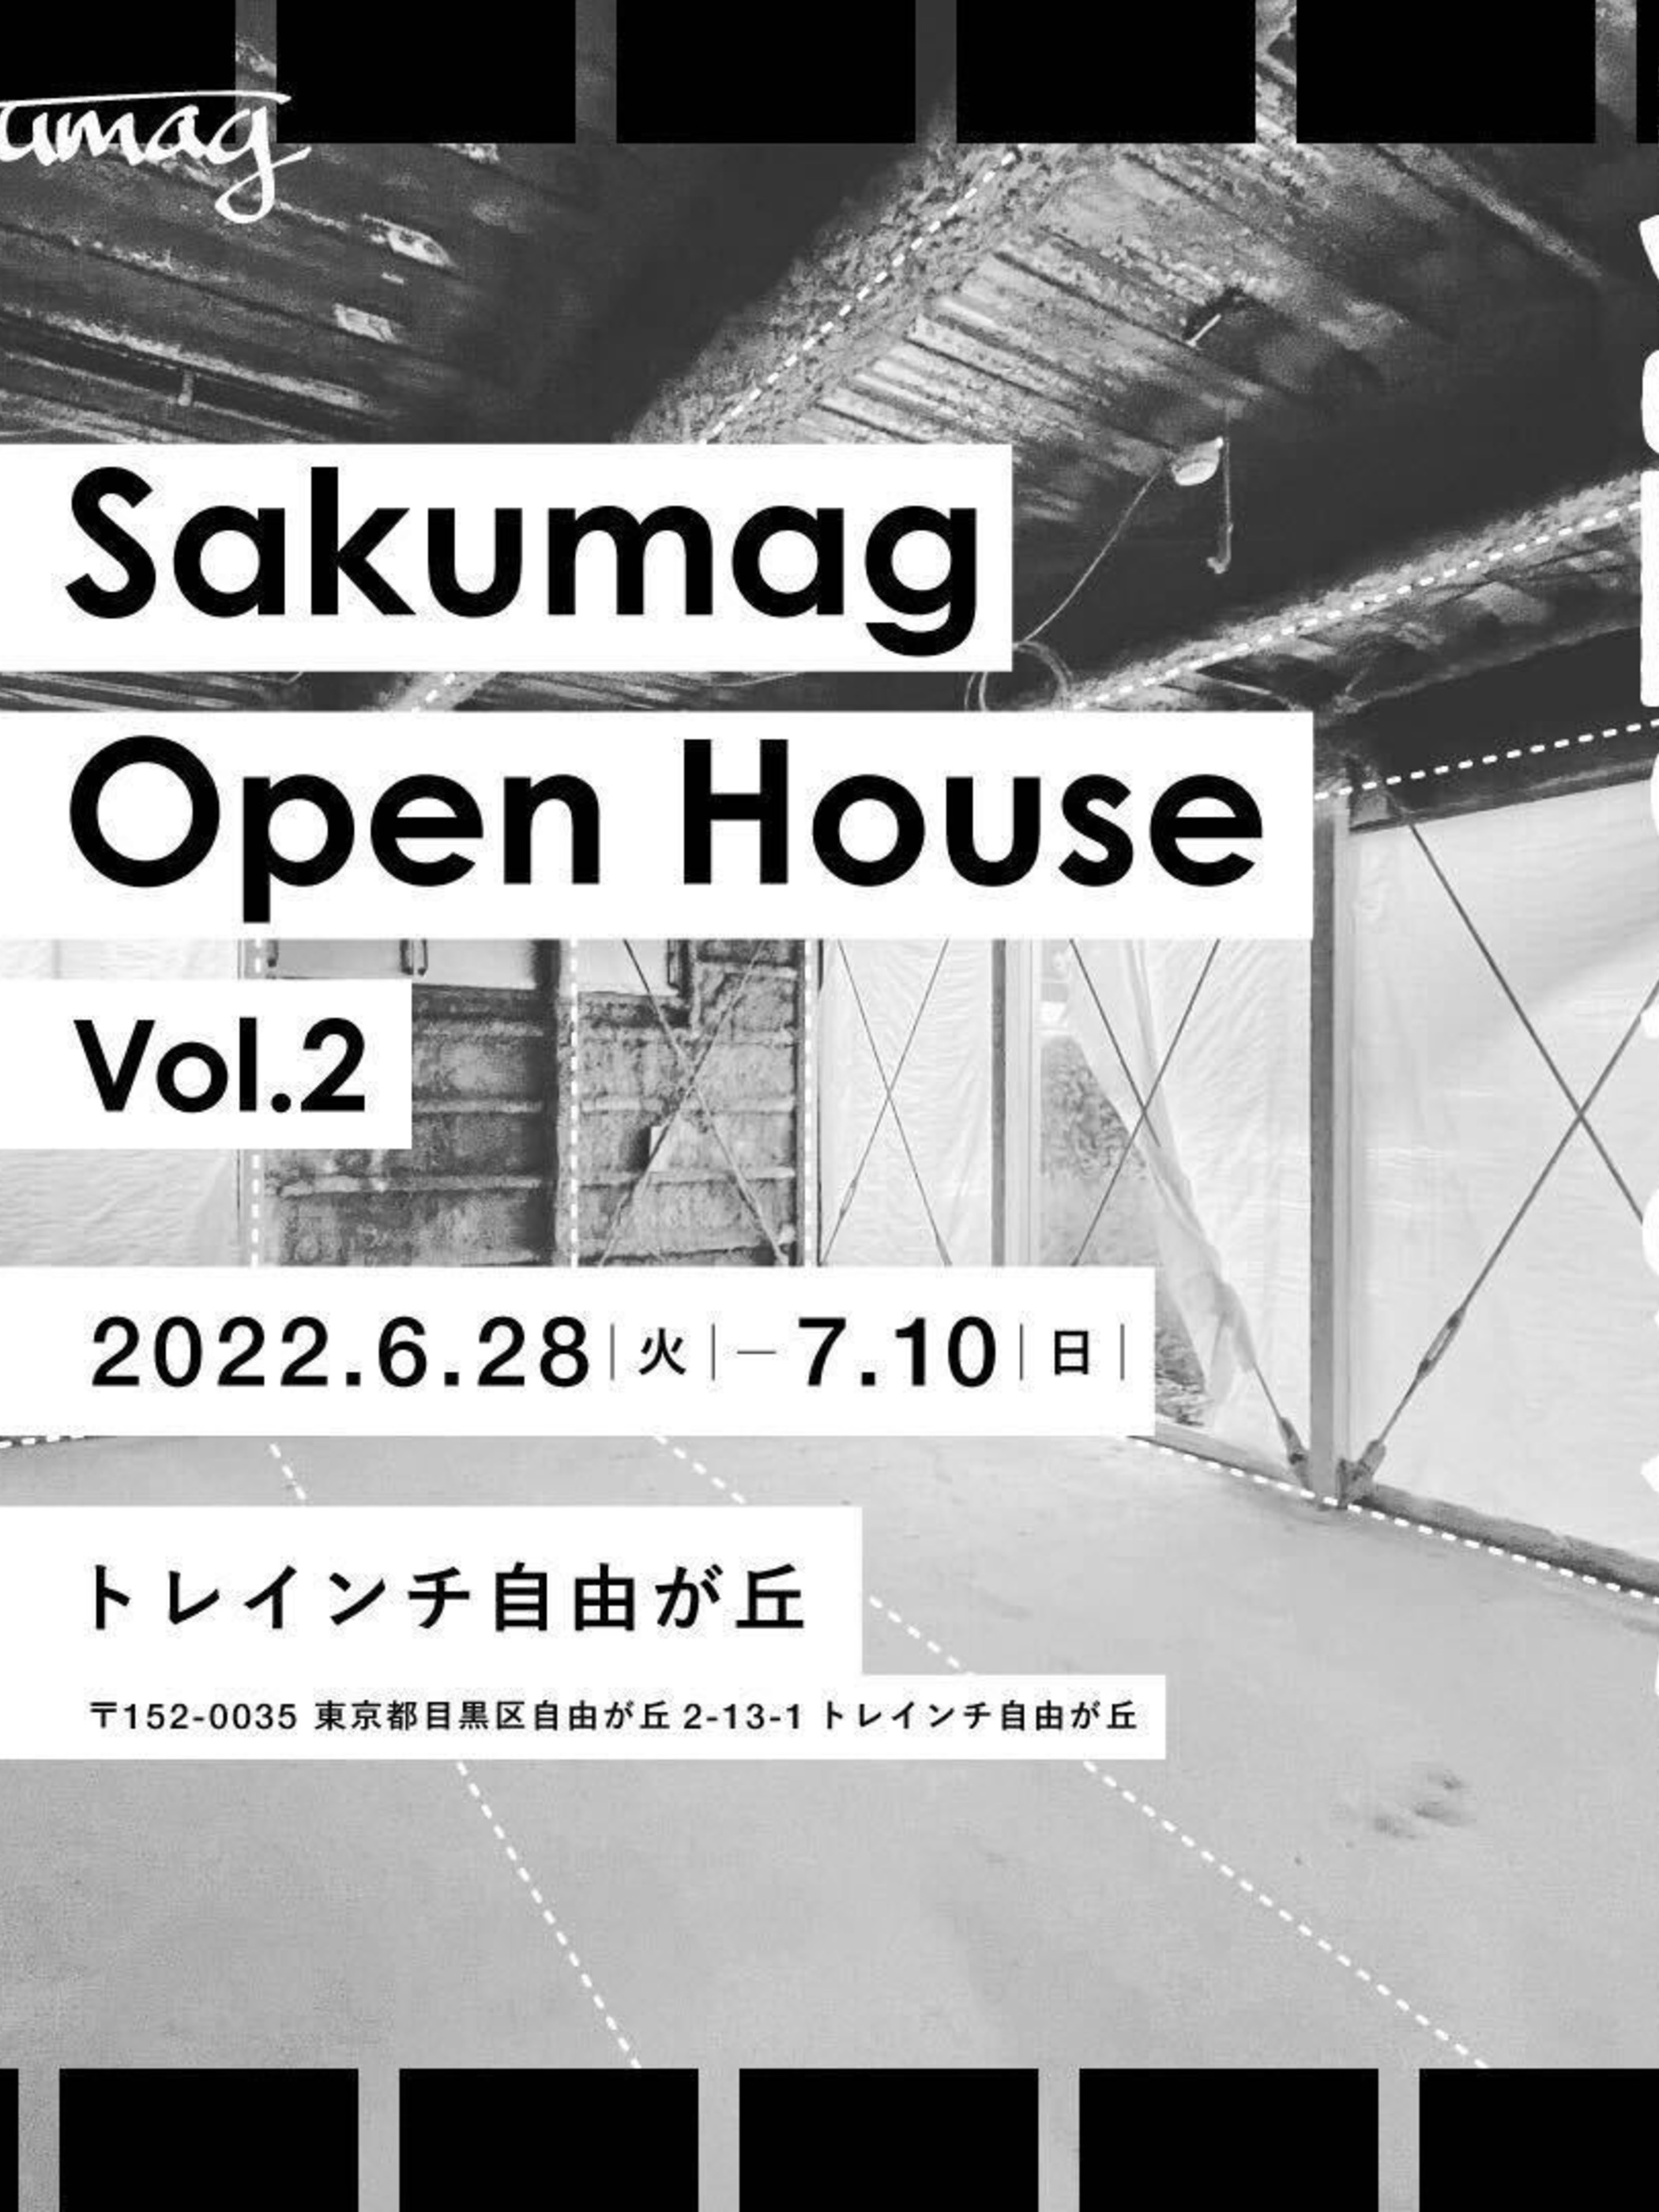 【大好きな本の話をしよう】　in Sakumag Open House vol. 2 #完璧じゃなくていい